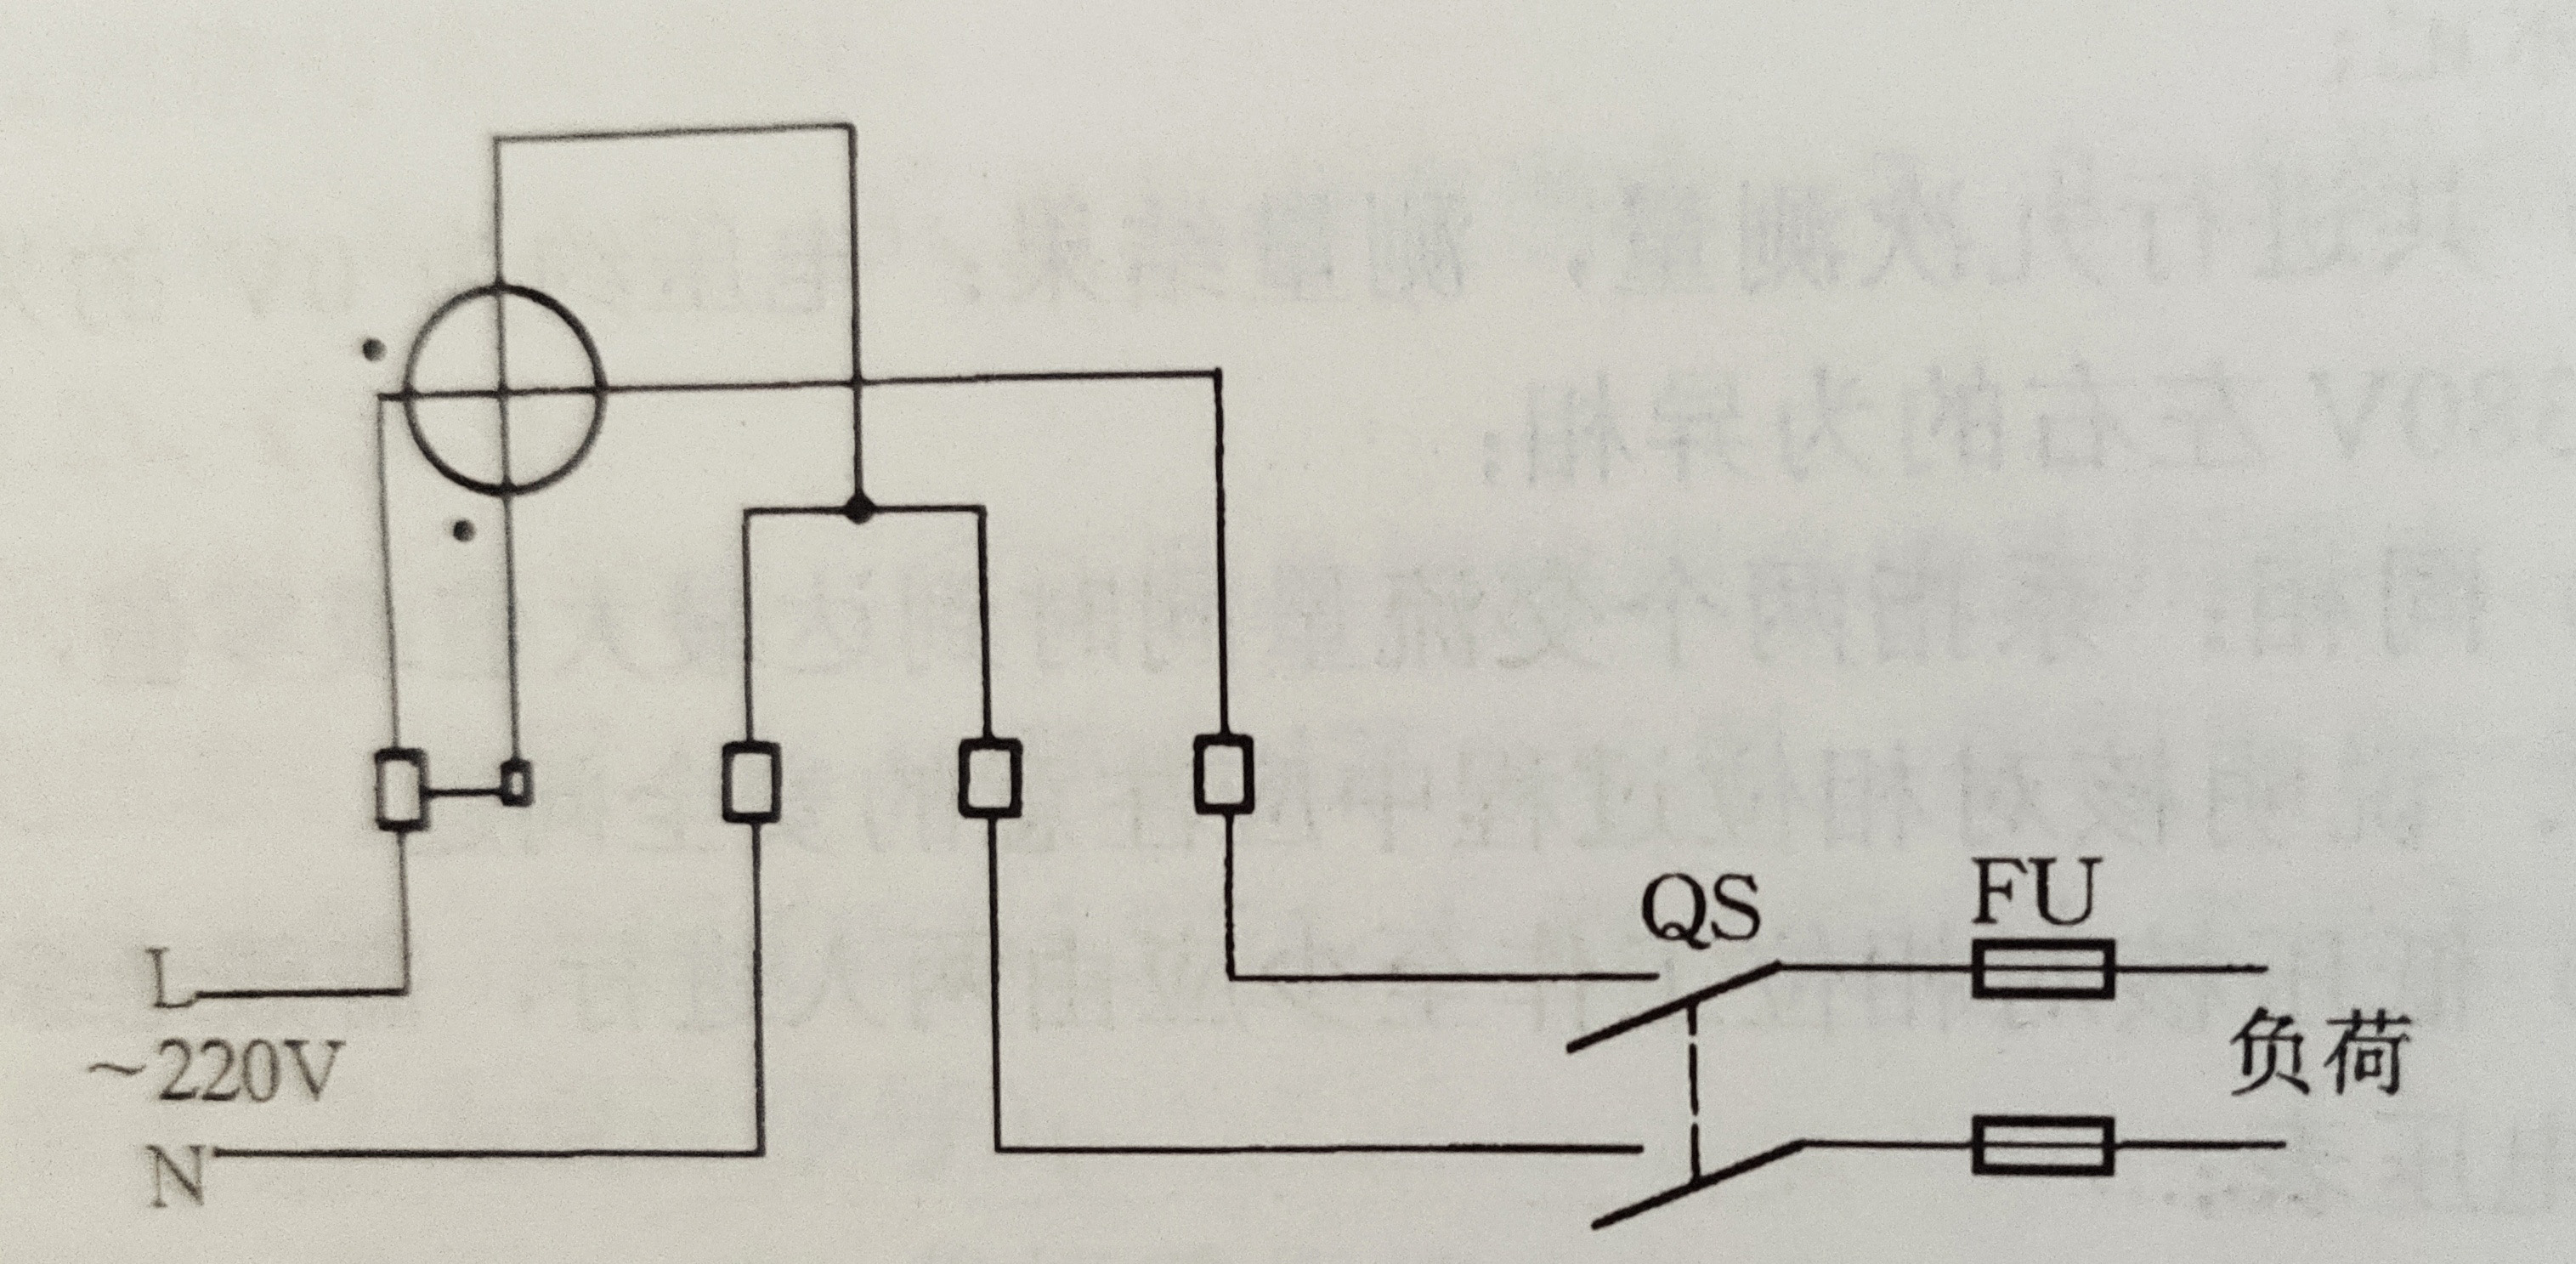 ③单相电能表配接电流互感器接线原理图如图所示